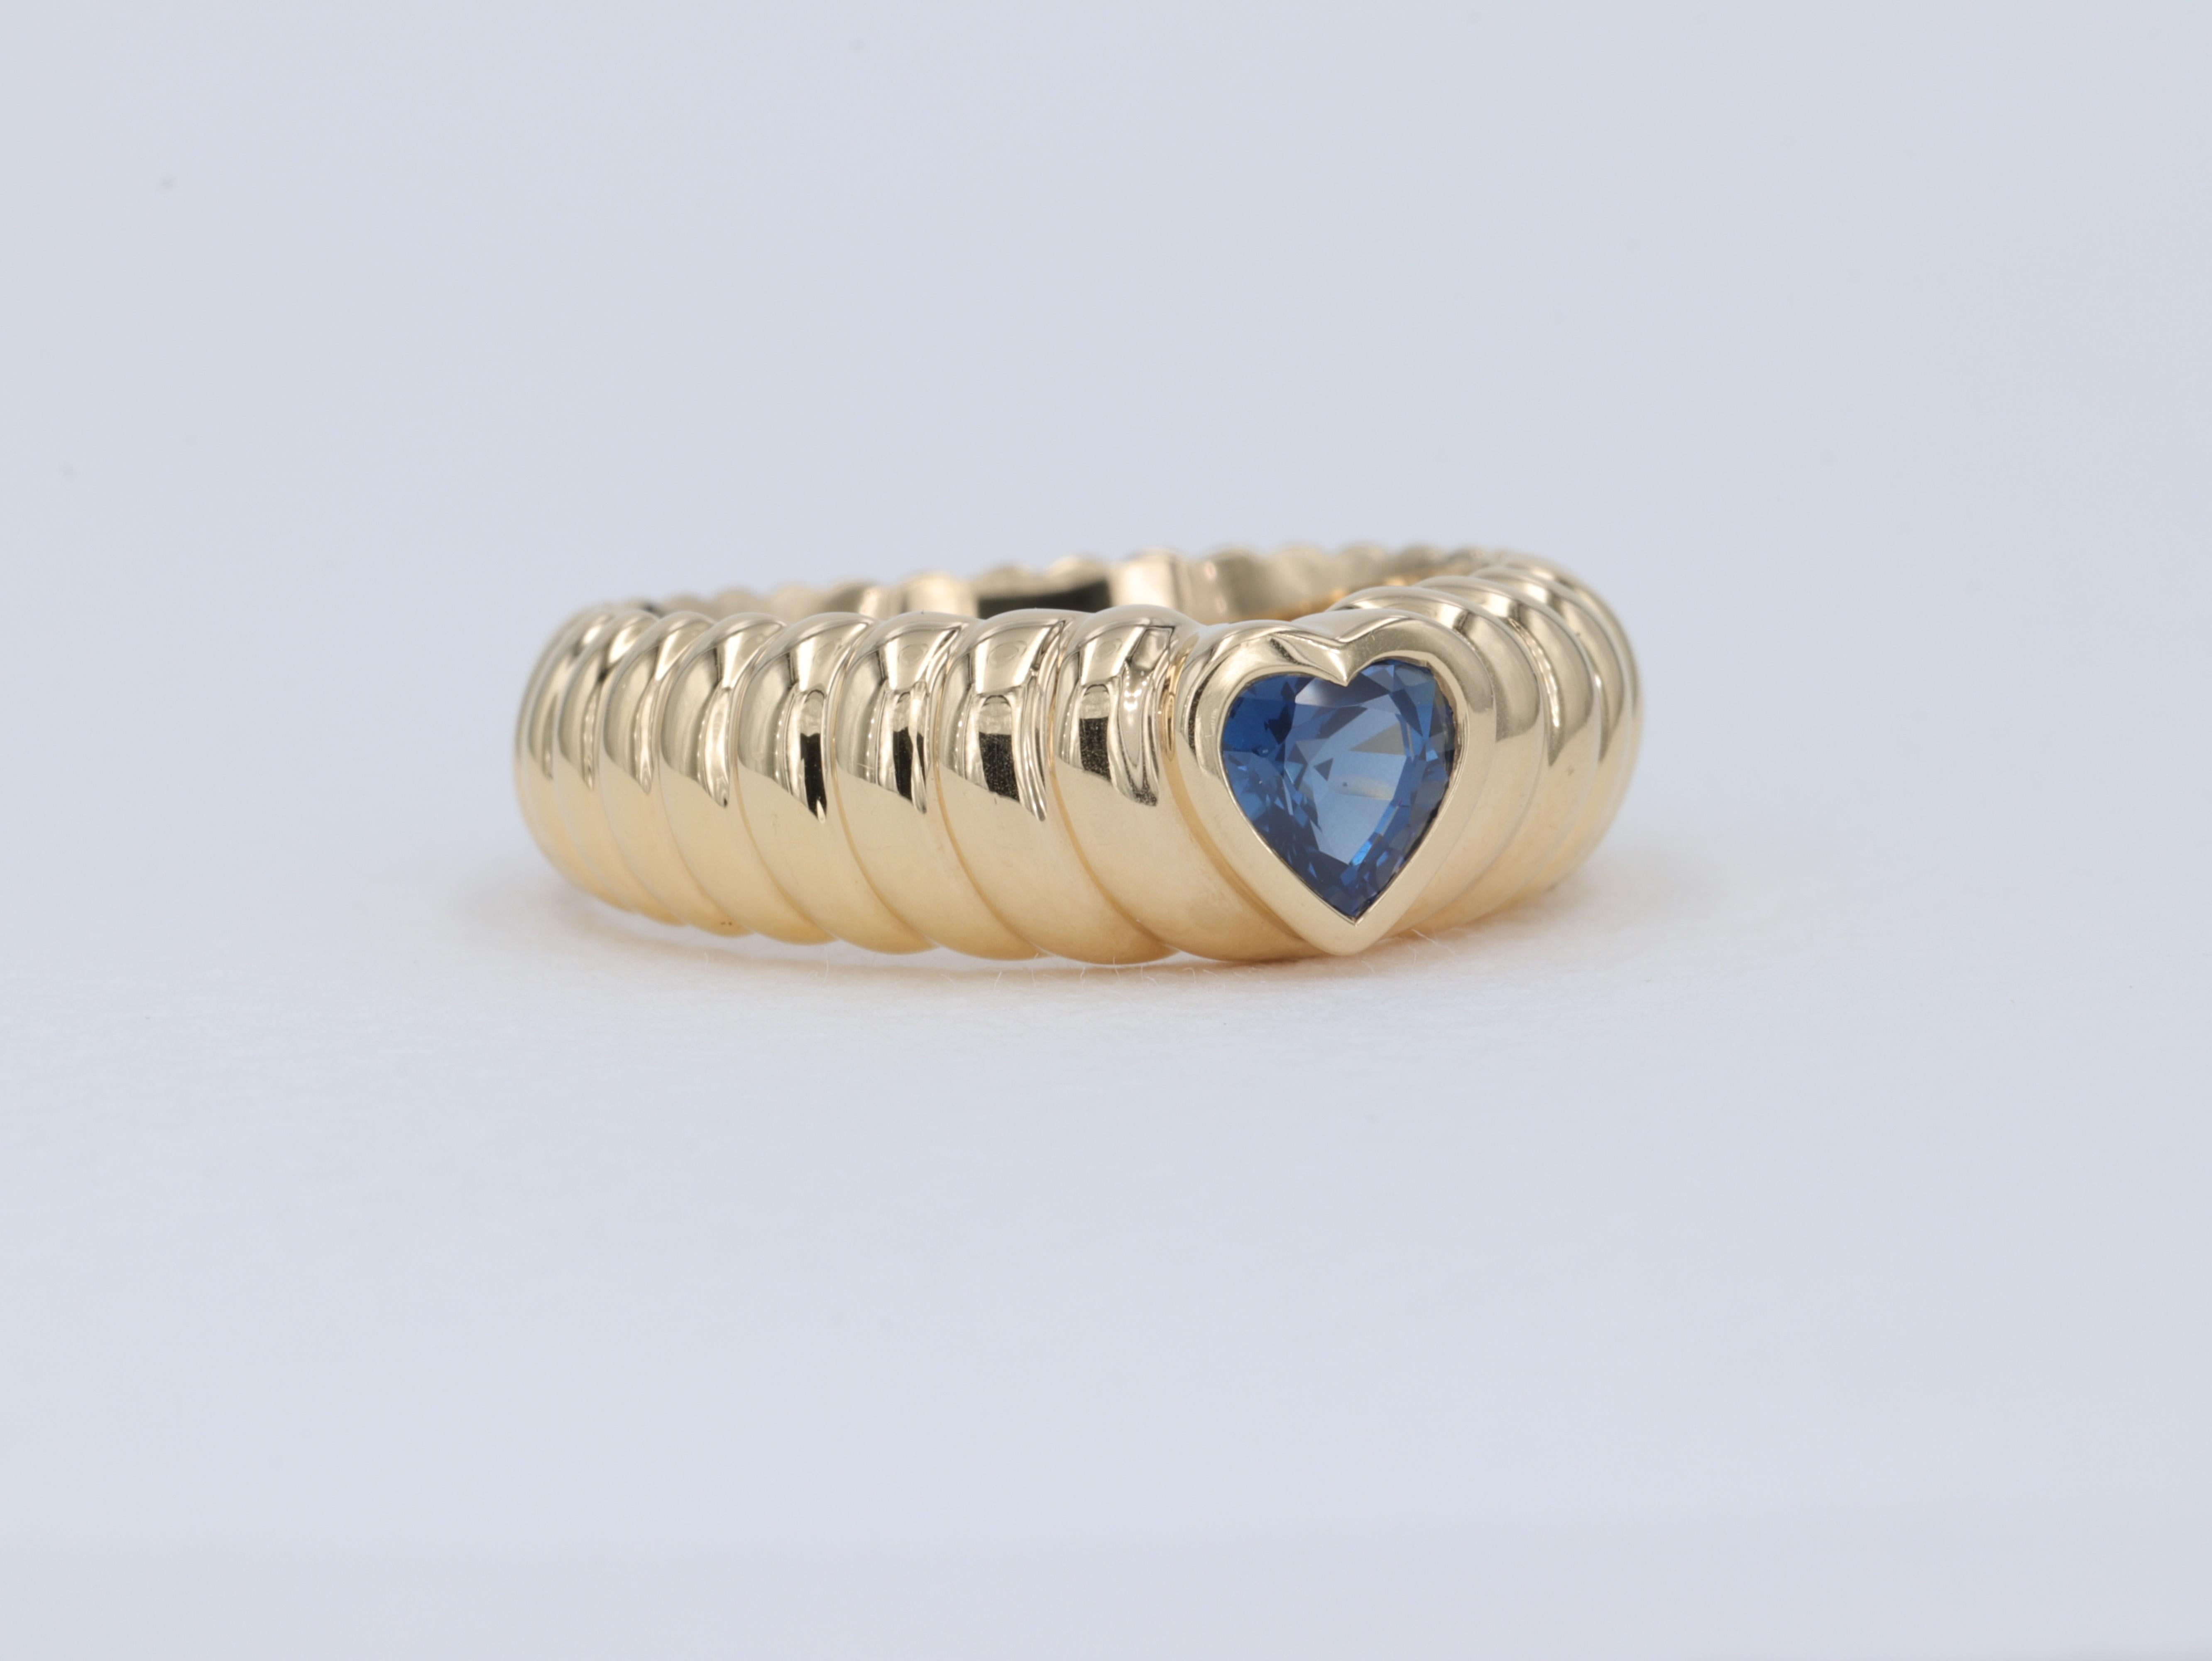 Cette bague à motif de cœur de Tiffany & Co. présente une pierre centrale en forme de cœur en saphir bleu avec une finition bombée qui donne l'apparence de vagues s'éloignant de la pierre centrale. 

Le saphir est d'un bleu vif et pèse environ 0,50